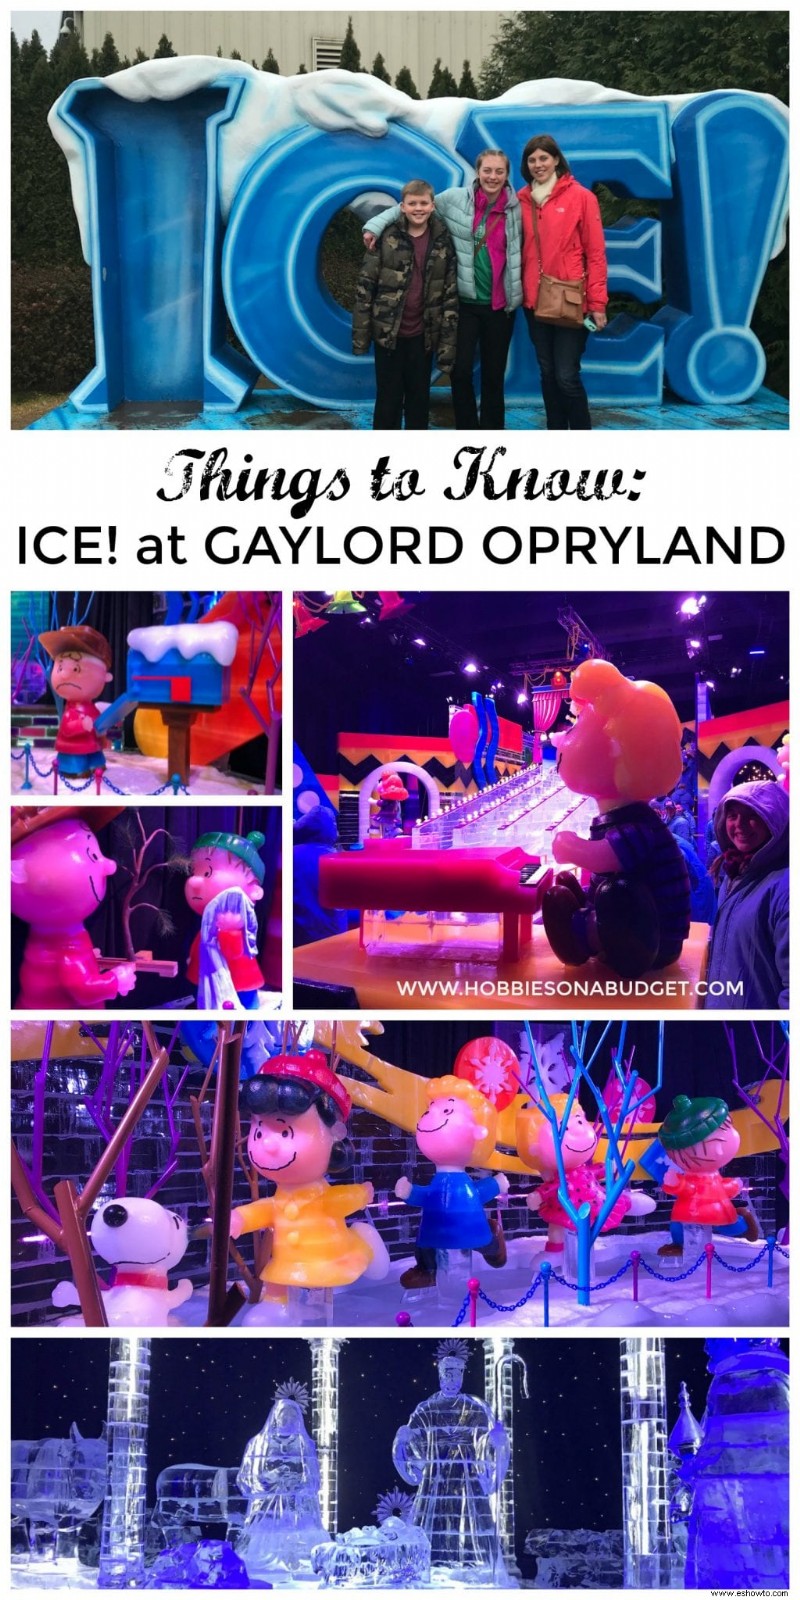 Qué saber:¡ICE! Gaylord Oprylandia